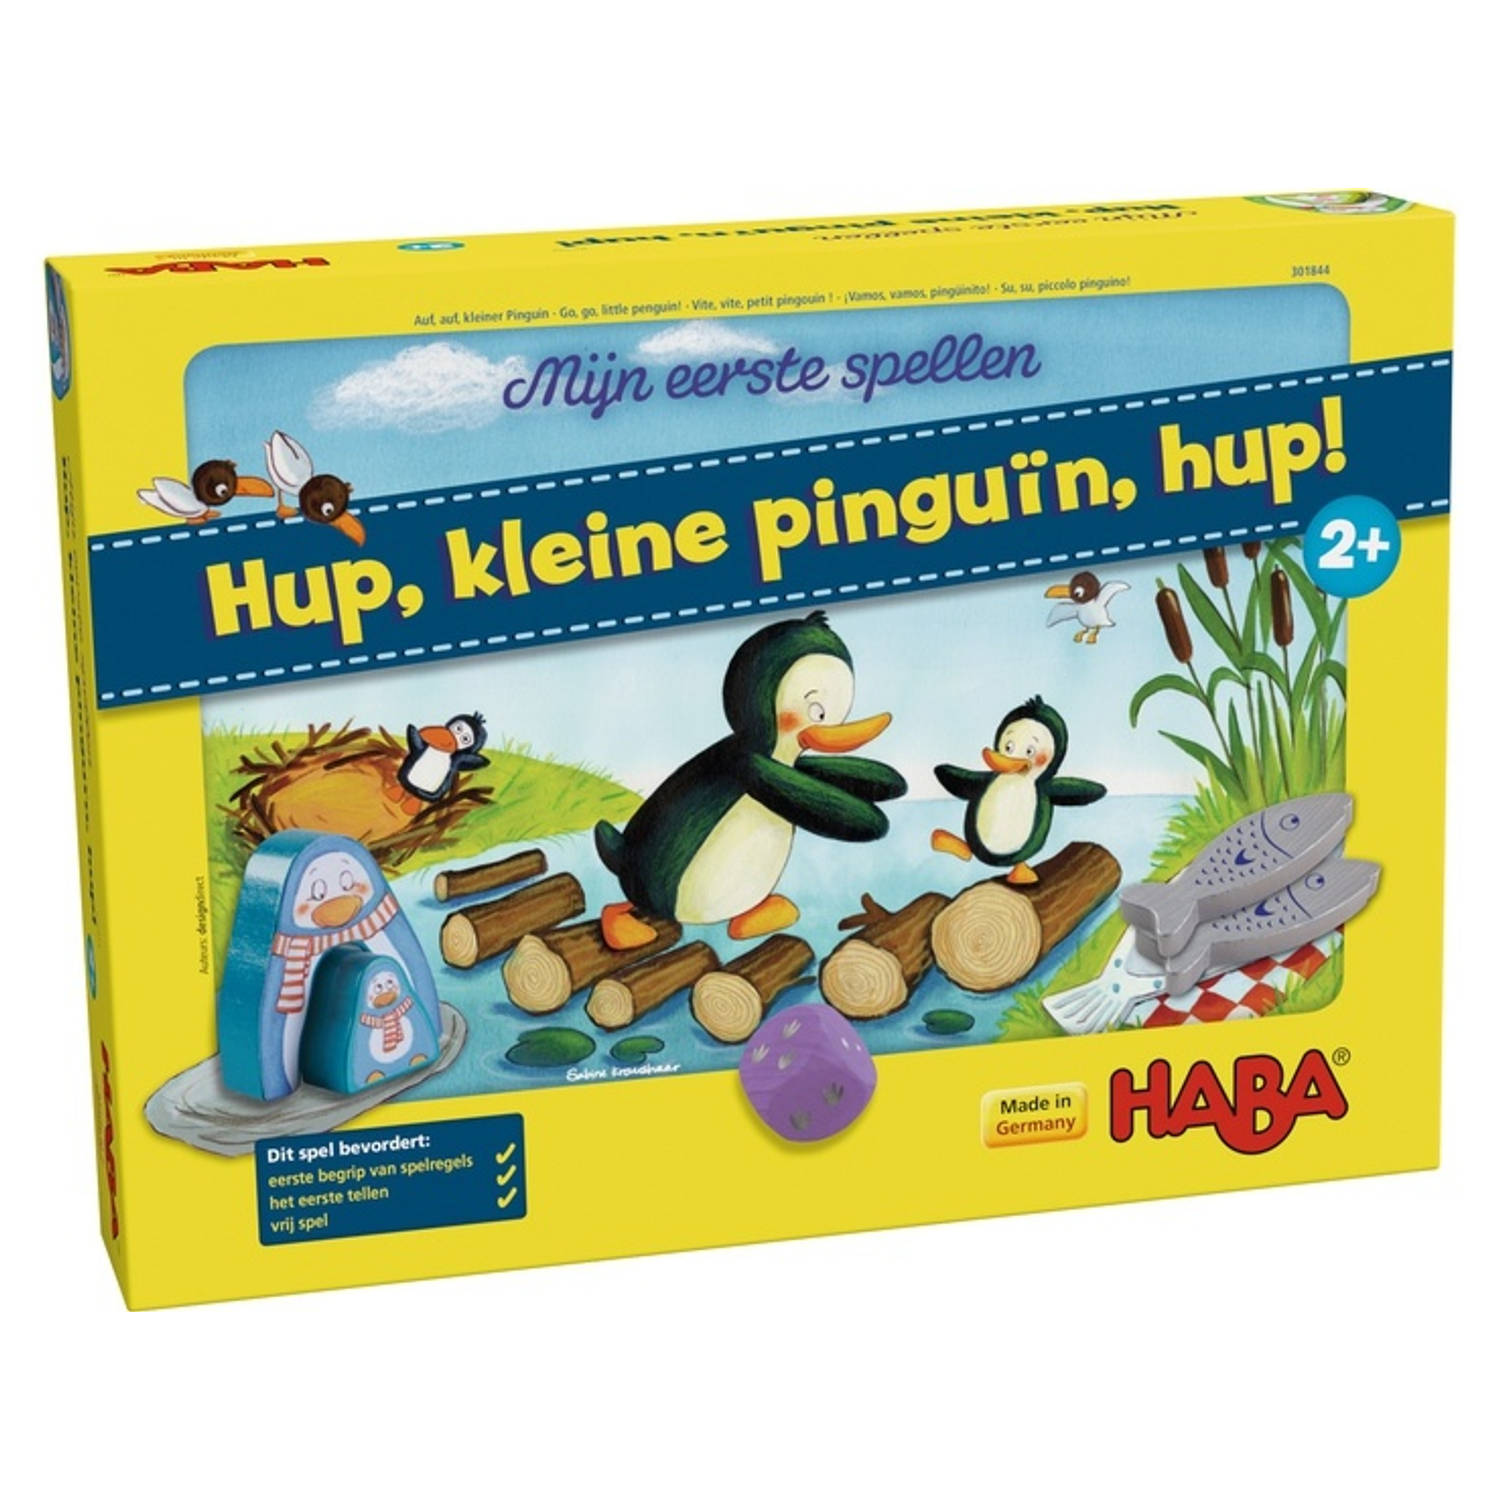 Haba Mijn eerste spellen - Hup, kleine pinguïn, hup! 301844